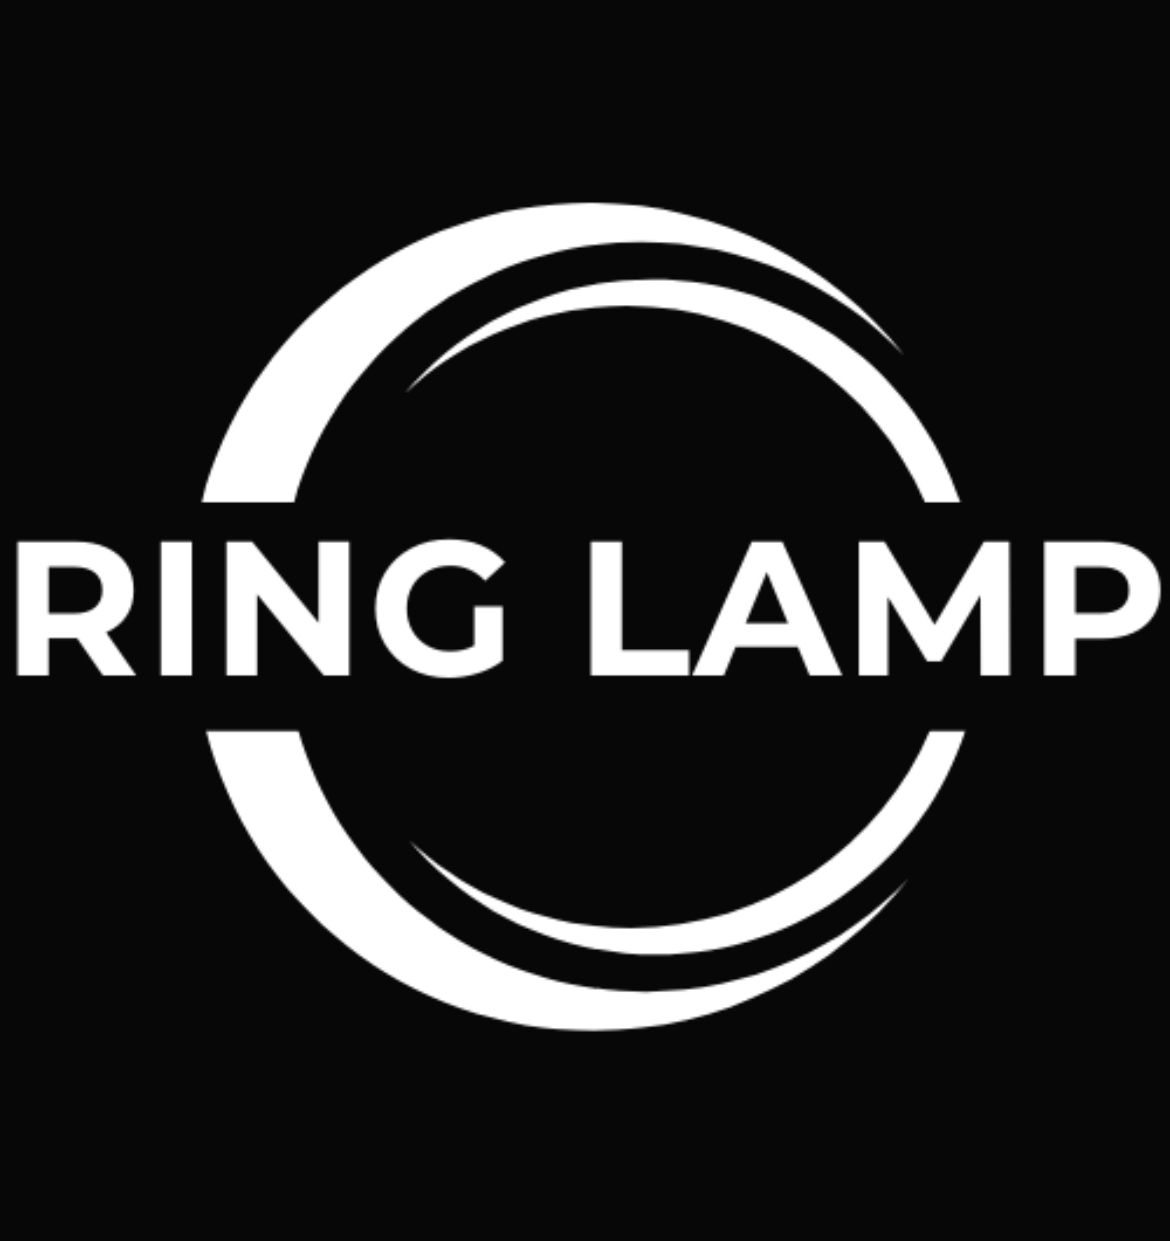 RING LAMP